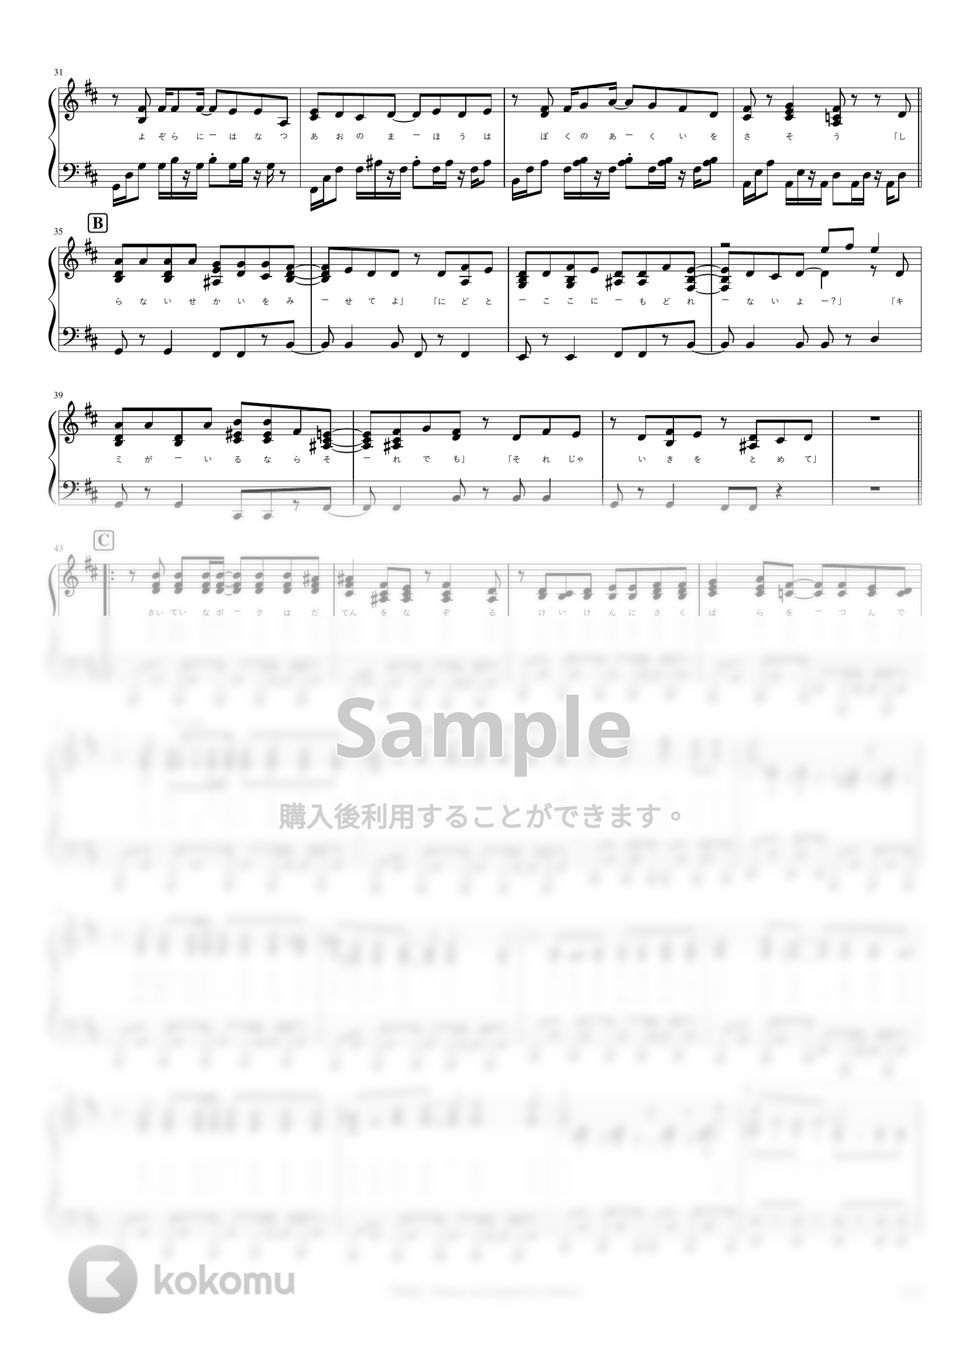 R Sound Design - 神曲 by pianomikan